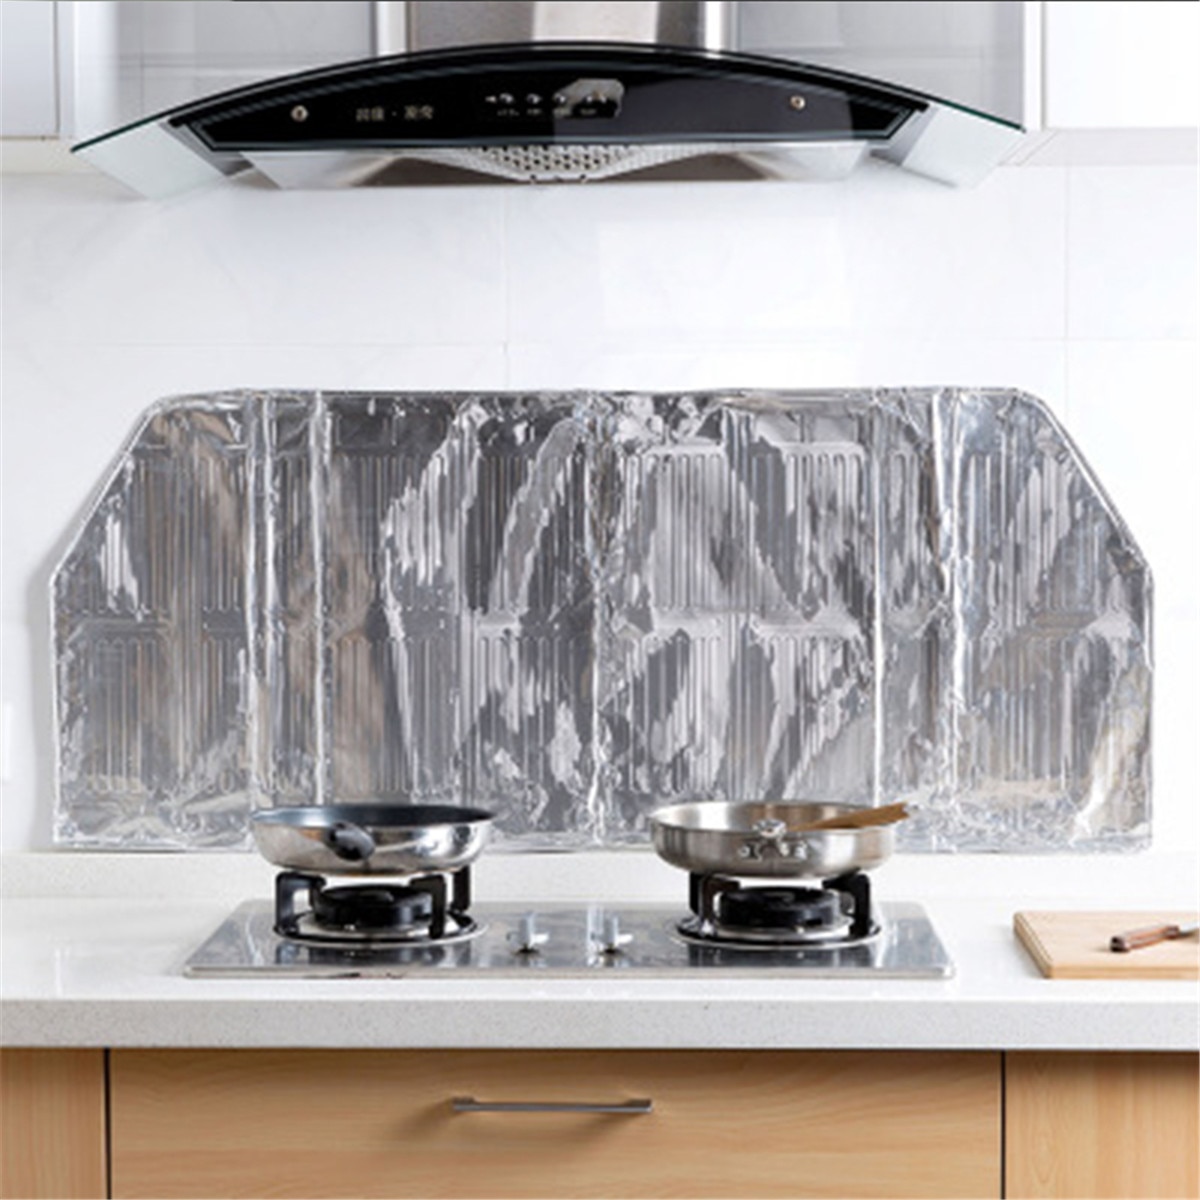 120 x 50cm aluminiumsfolie komfur olie stænk skærm dækning anti splatter beskyttelsesværktøjer køkken stegepande olie stænk beskyttelse skjold